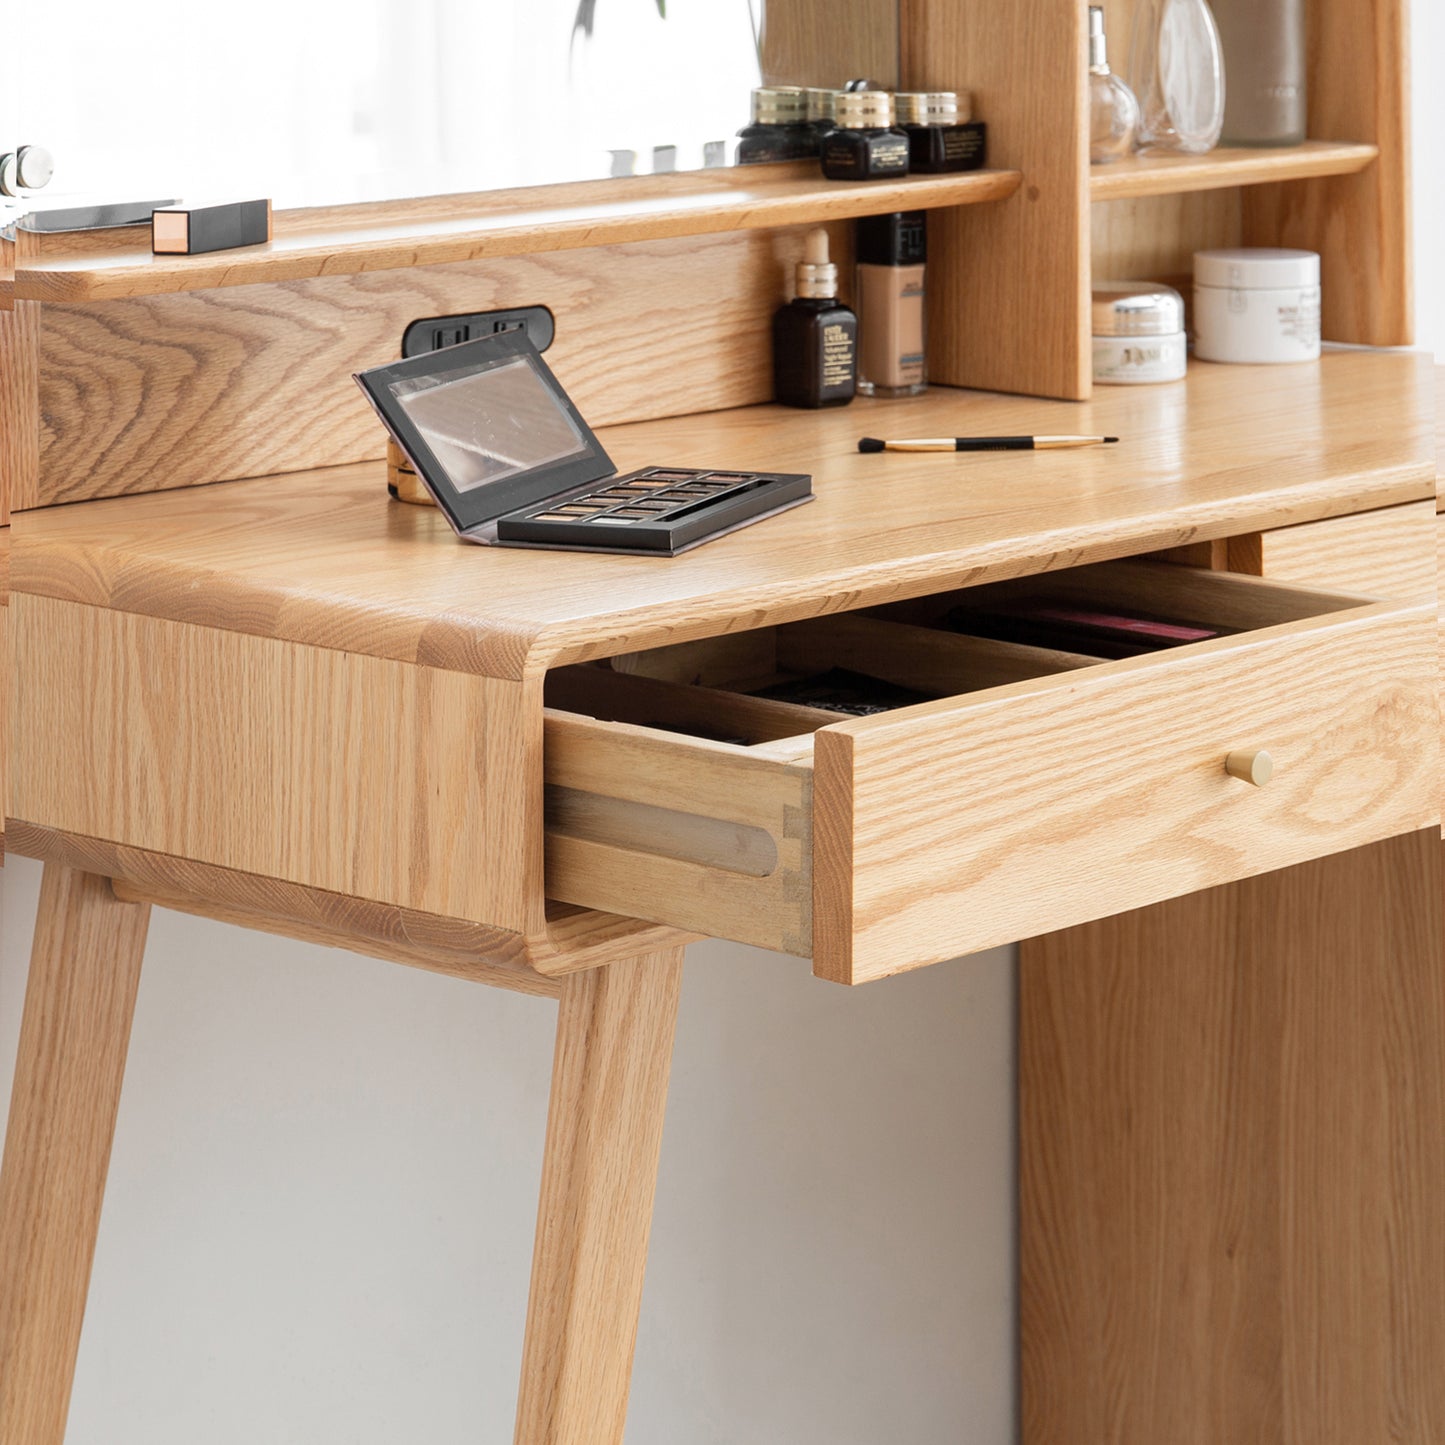 Dresser Table dresser 100% solid oak table table desk top table dresser compact dresser accessories storage width 90cm storage drawer natural wood natural